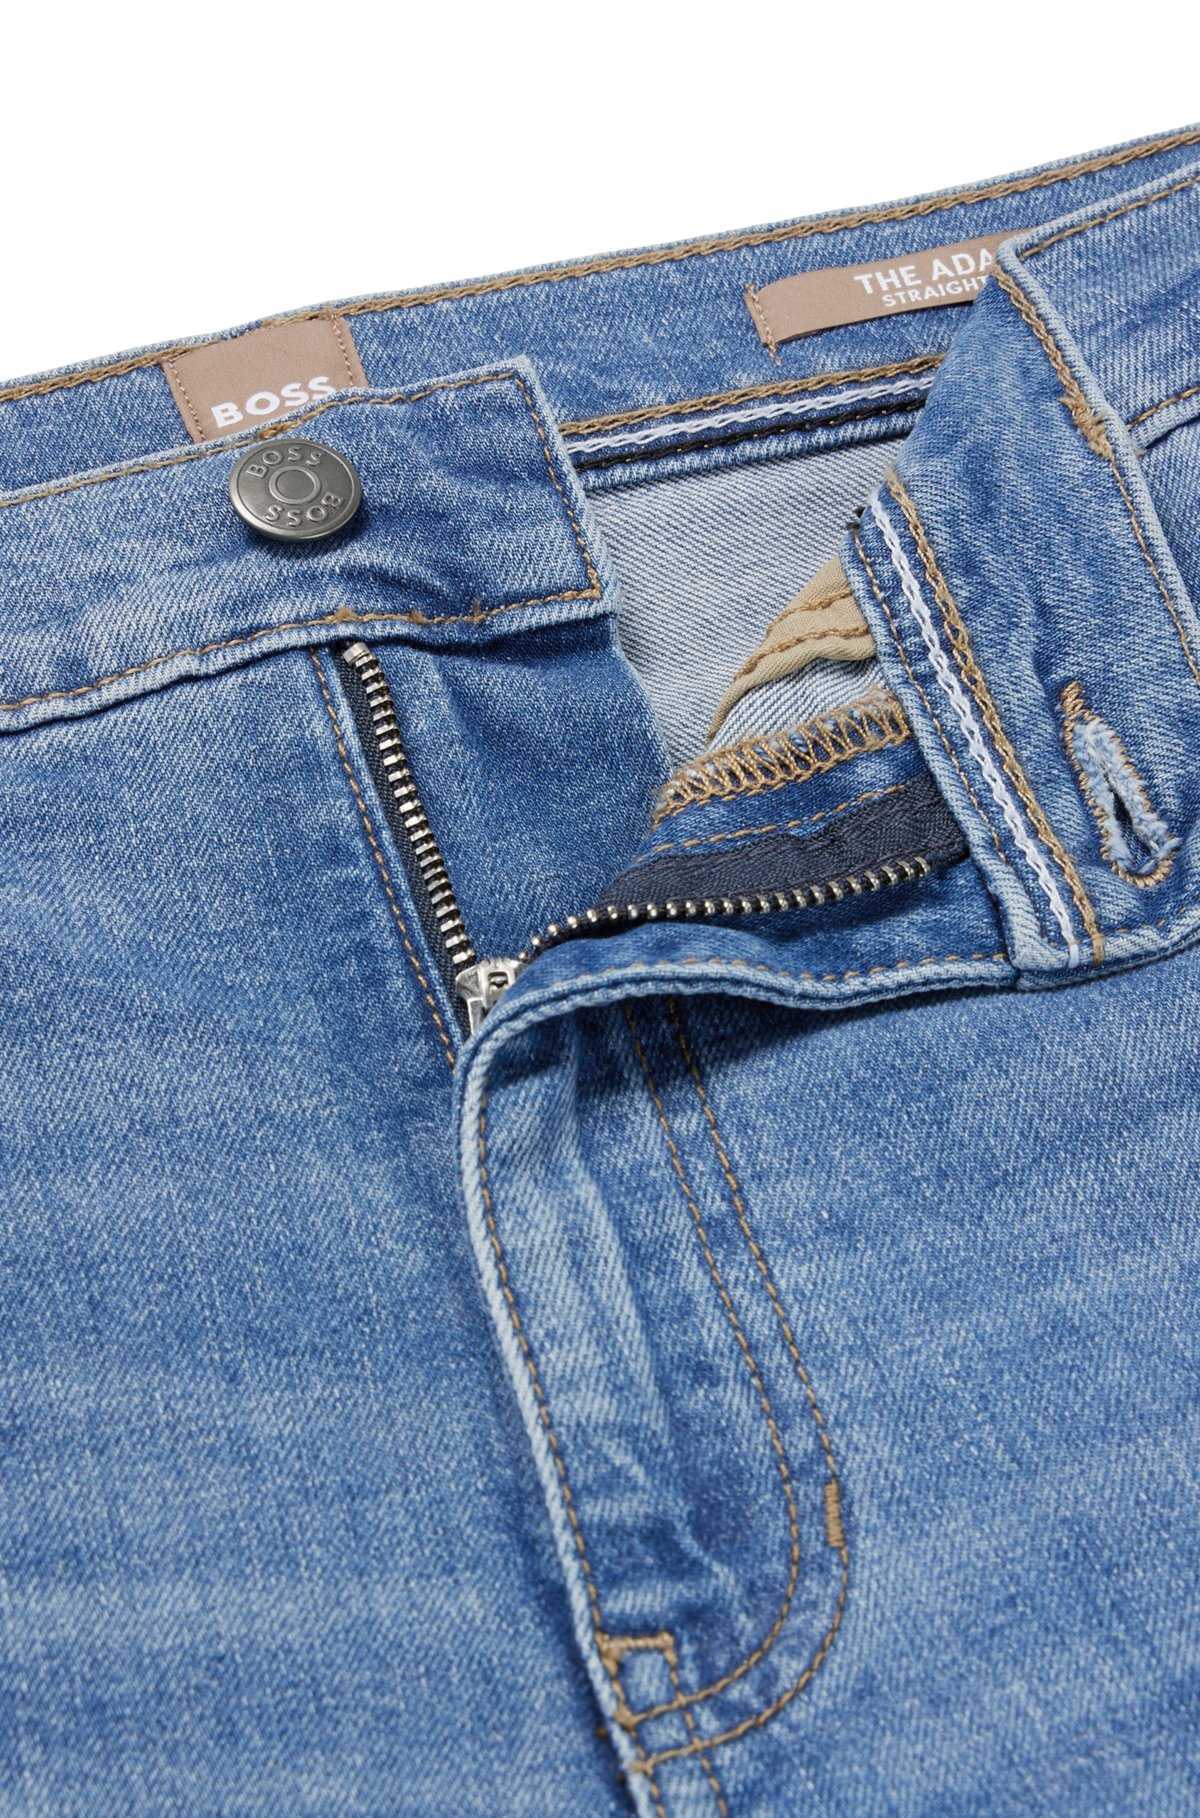 Jeans met hoge taille van comfortabel blauw stretchdenim, Blauw